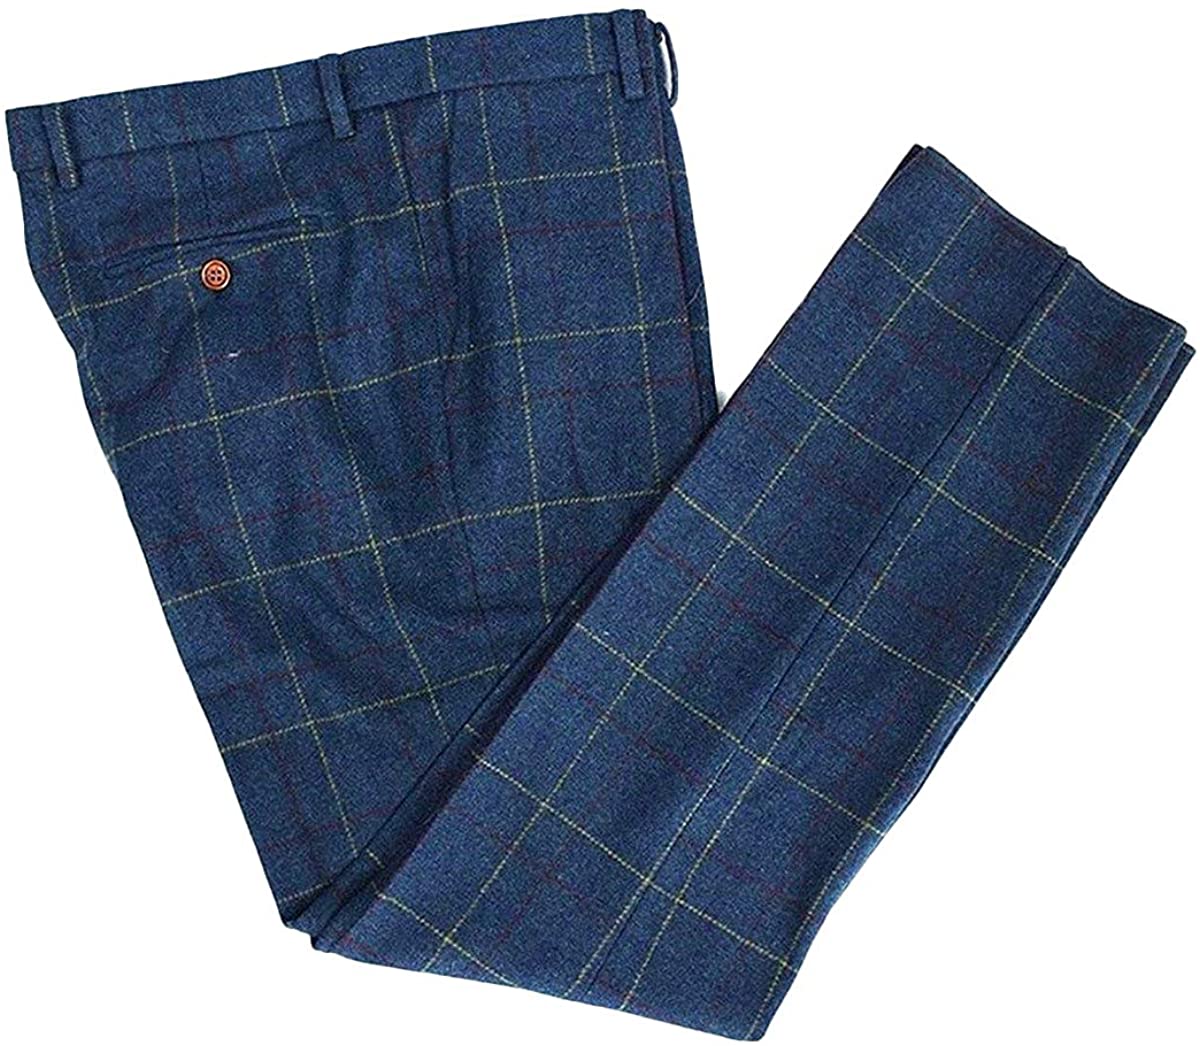 ceehuteey Men's Tweed Plaid Classic Wool Suit Pants